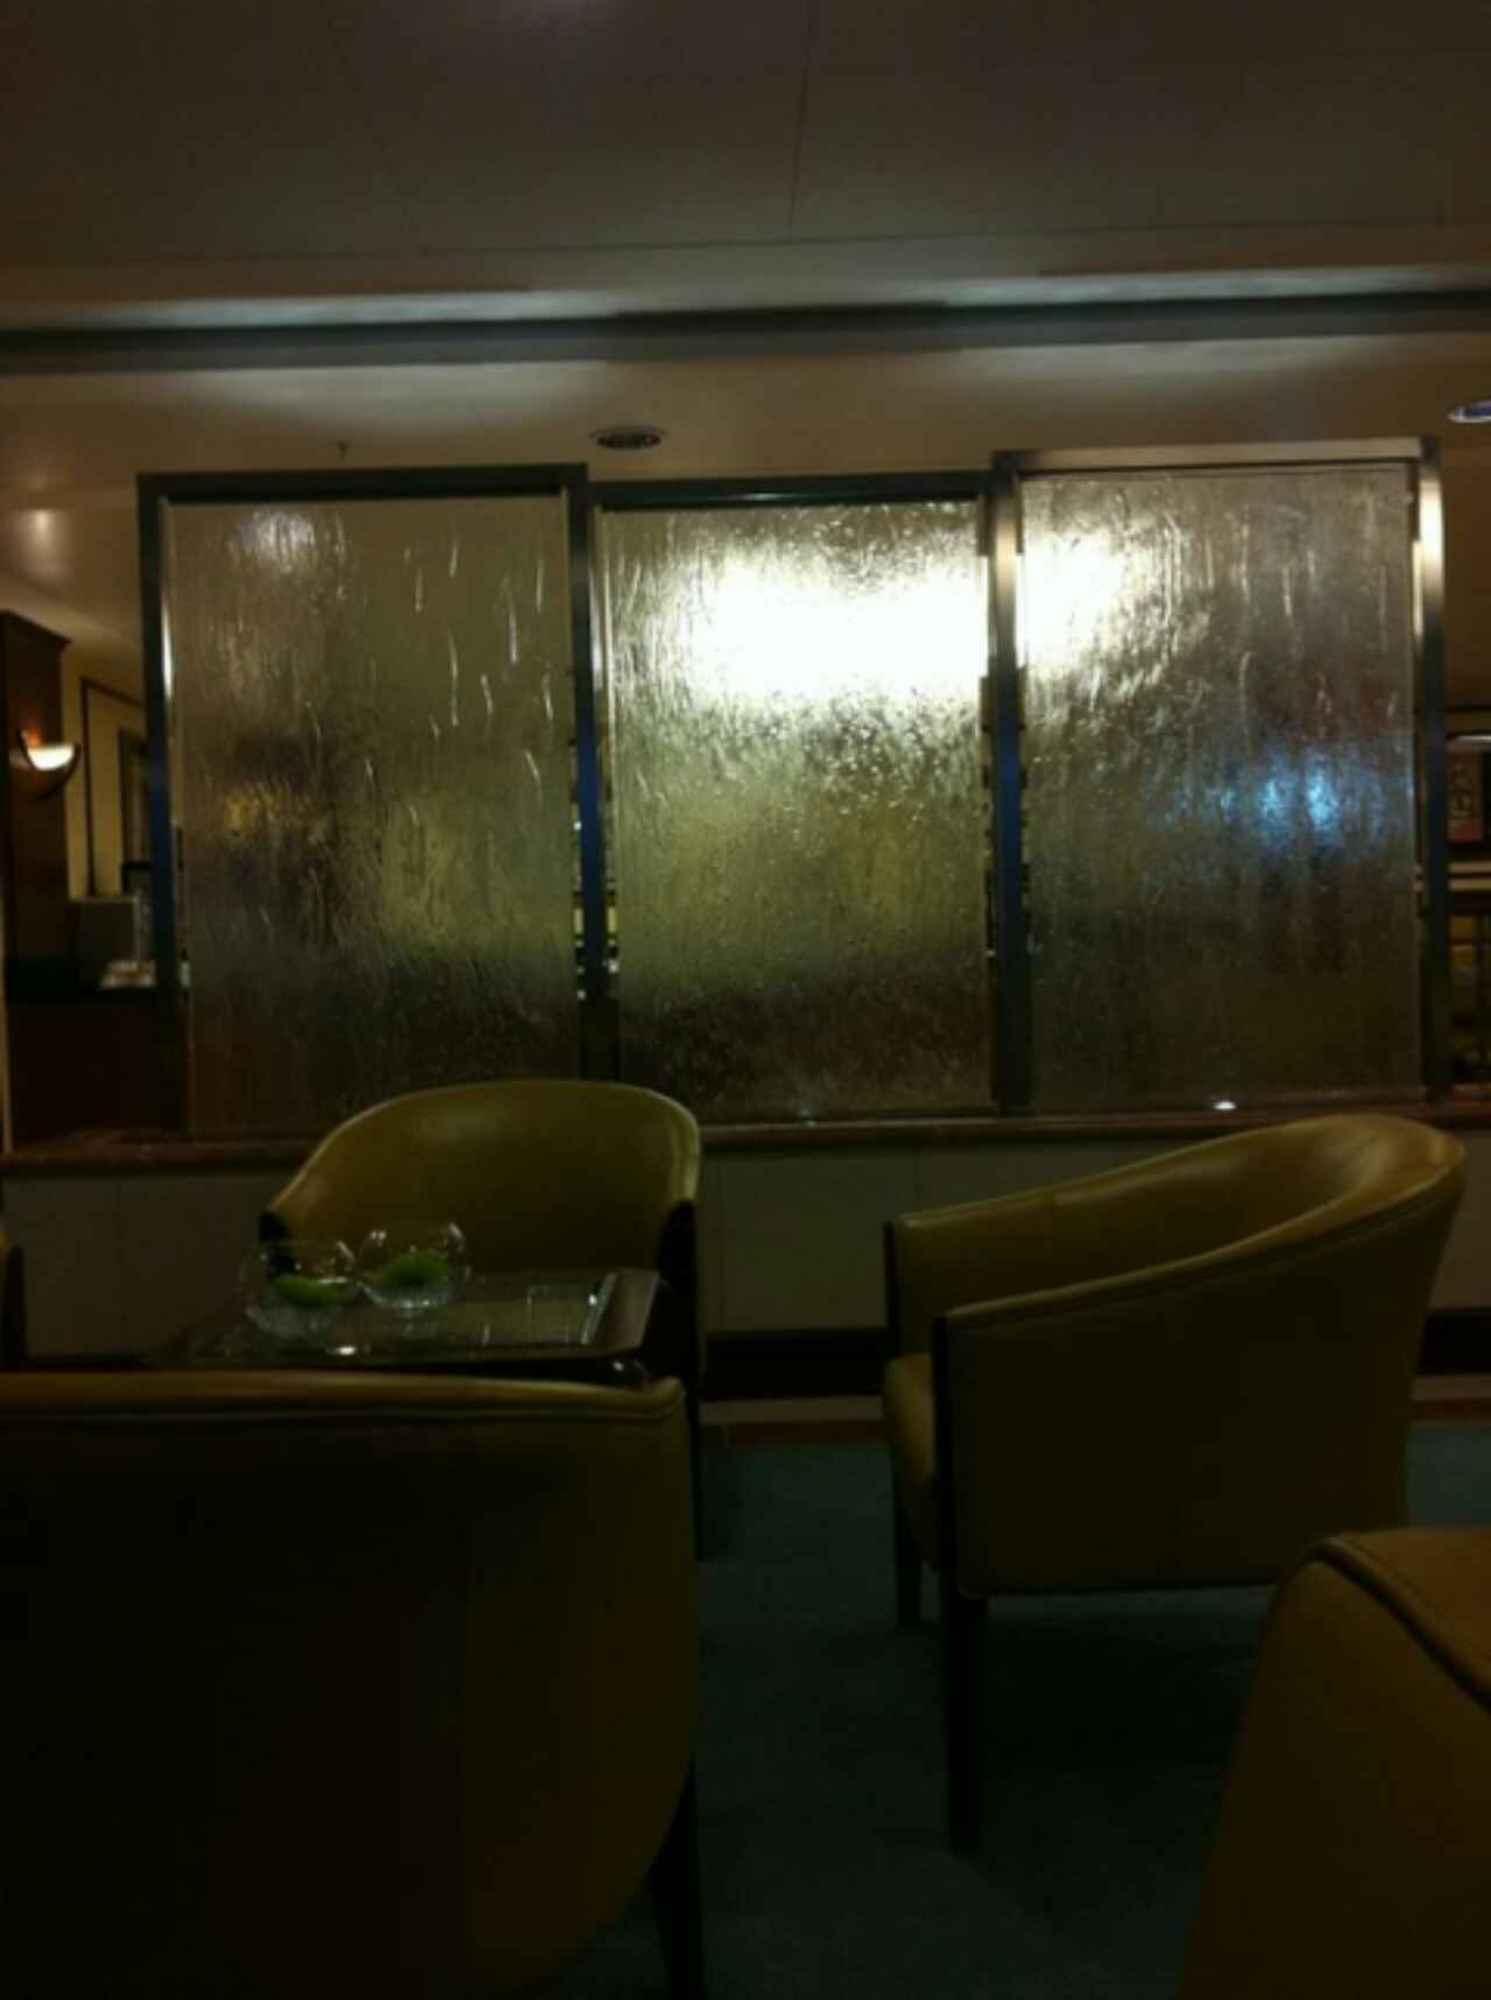 The Emirates Lounge image 2 of 2